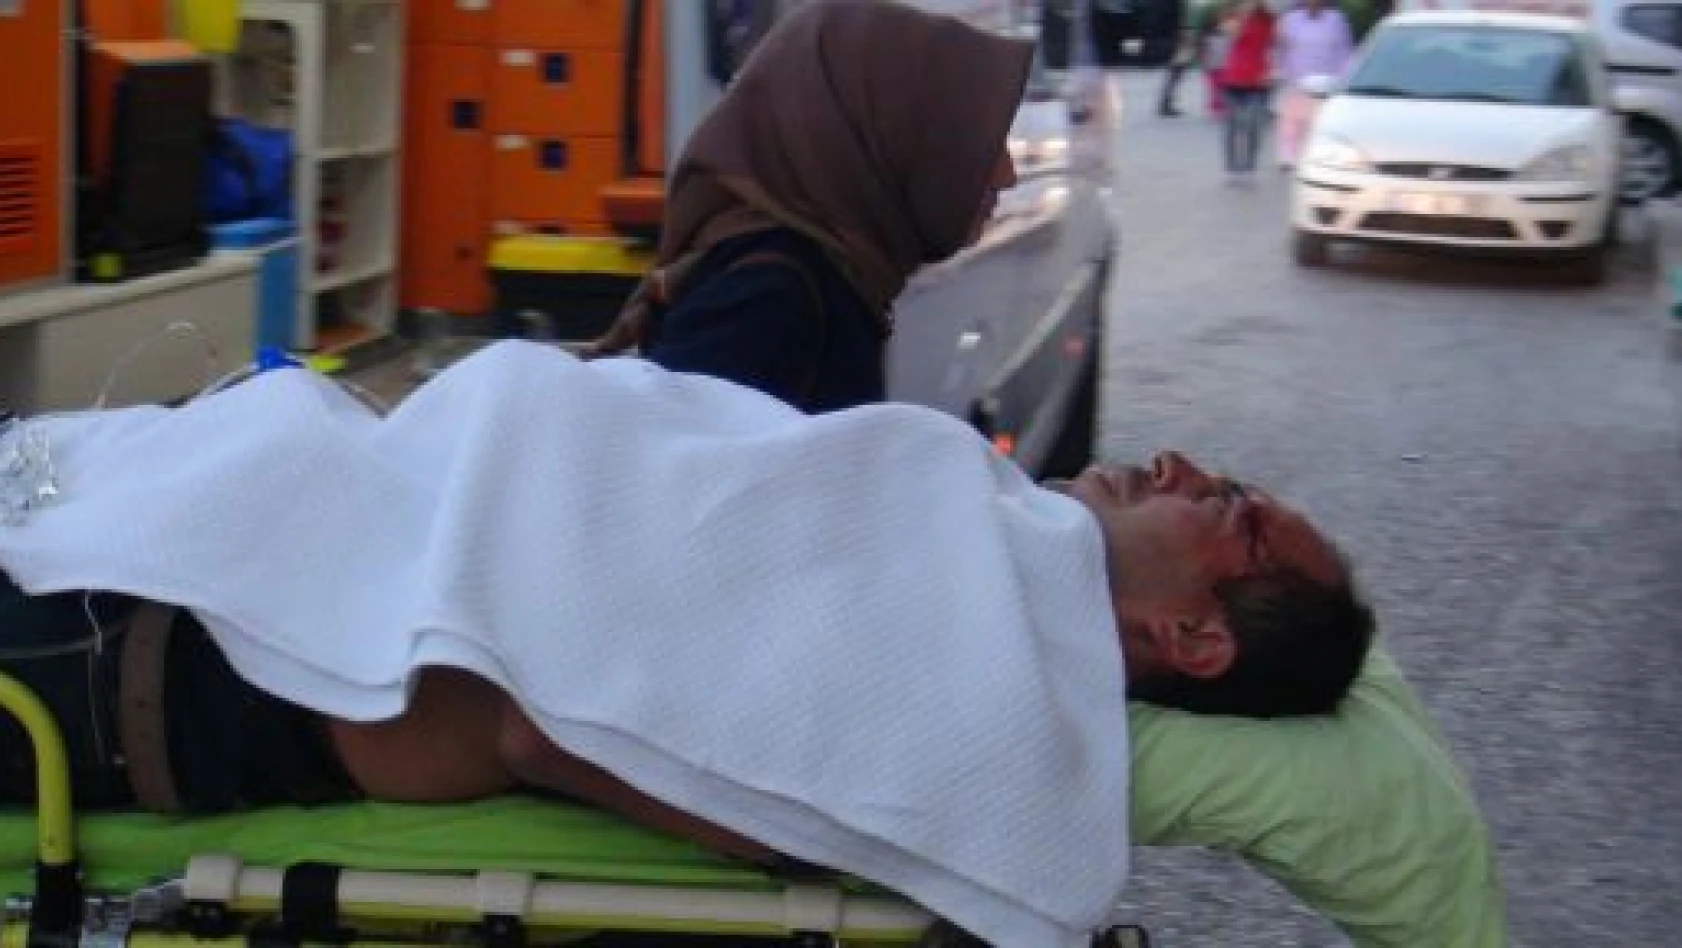 Tosya'da Trafik Kazası: 1 Yaralı